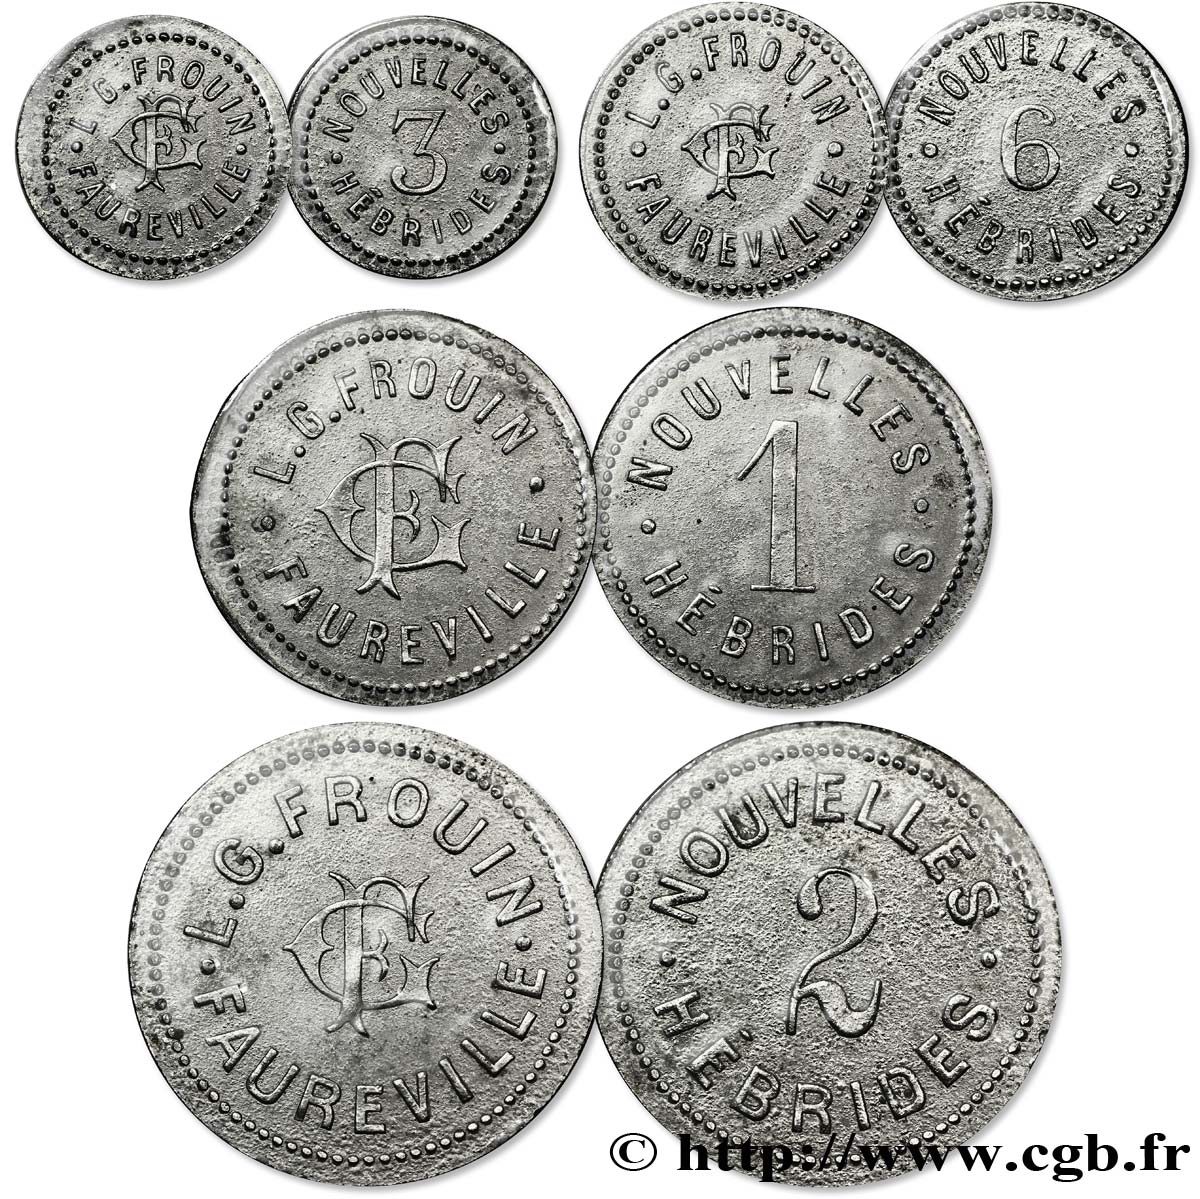 NEW HEBRIDES (VANUATU since 1980) Série de 4 Monnaies Frouin-Faureville n.d.  XF 